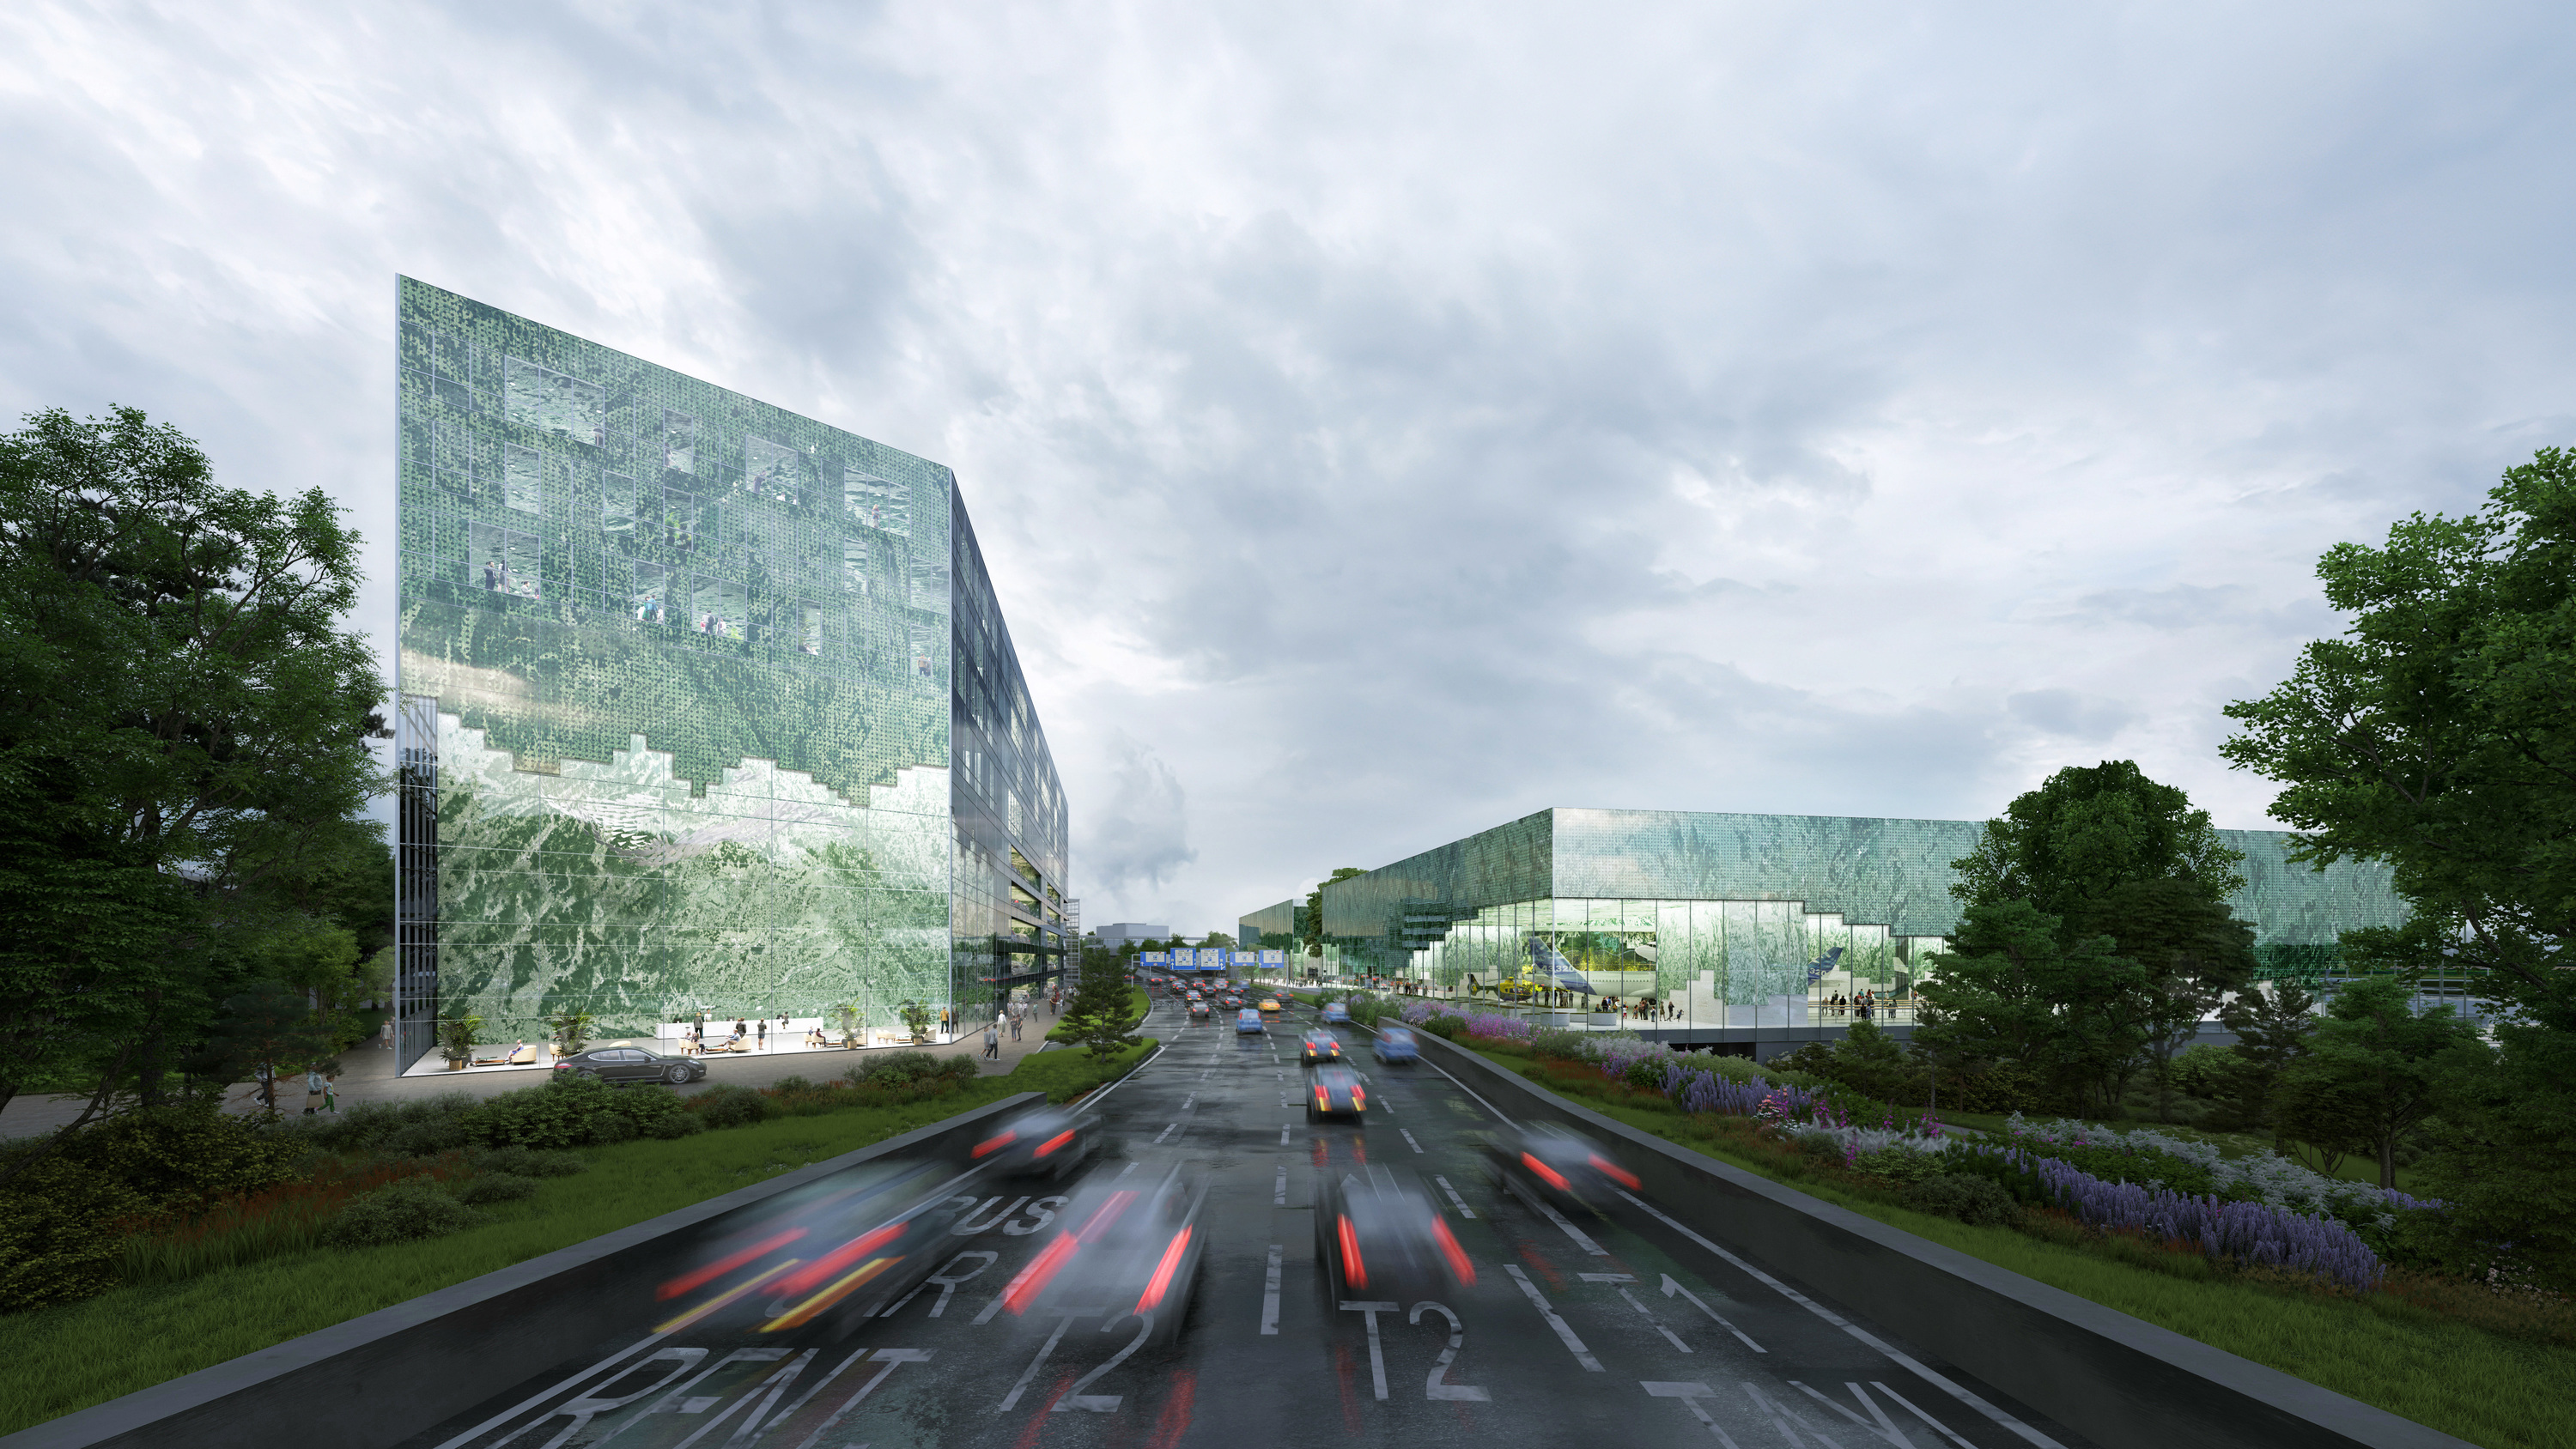 座落在機場大道兩側的新航站建築，是進出布拉格機場最先映入眼簾的綠寶石地標。